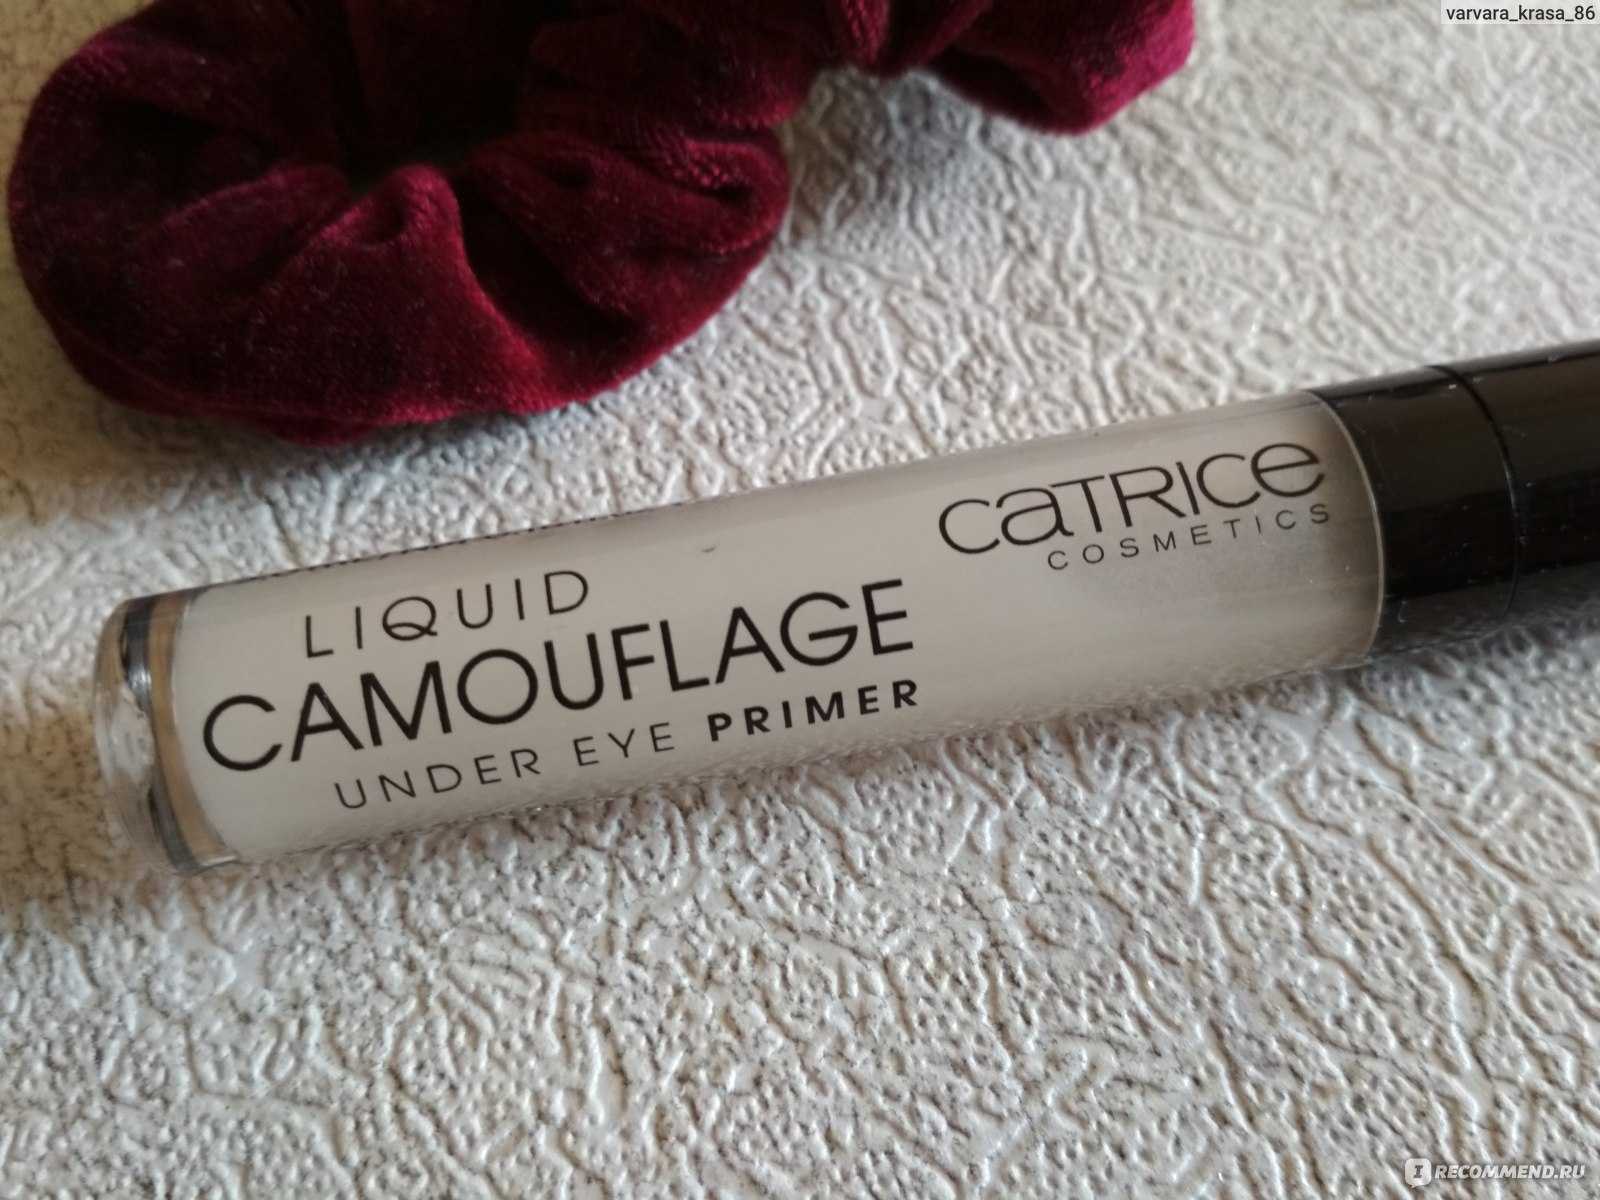 Консилер catrice liquid camouflage - обзор, плюсы и минусы